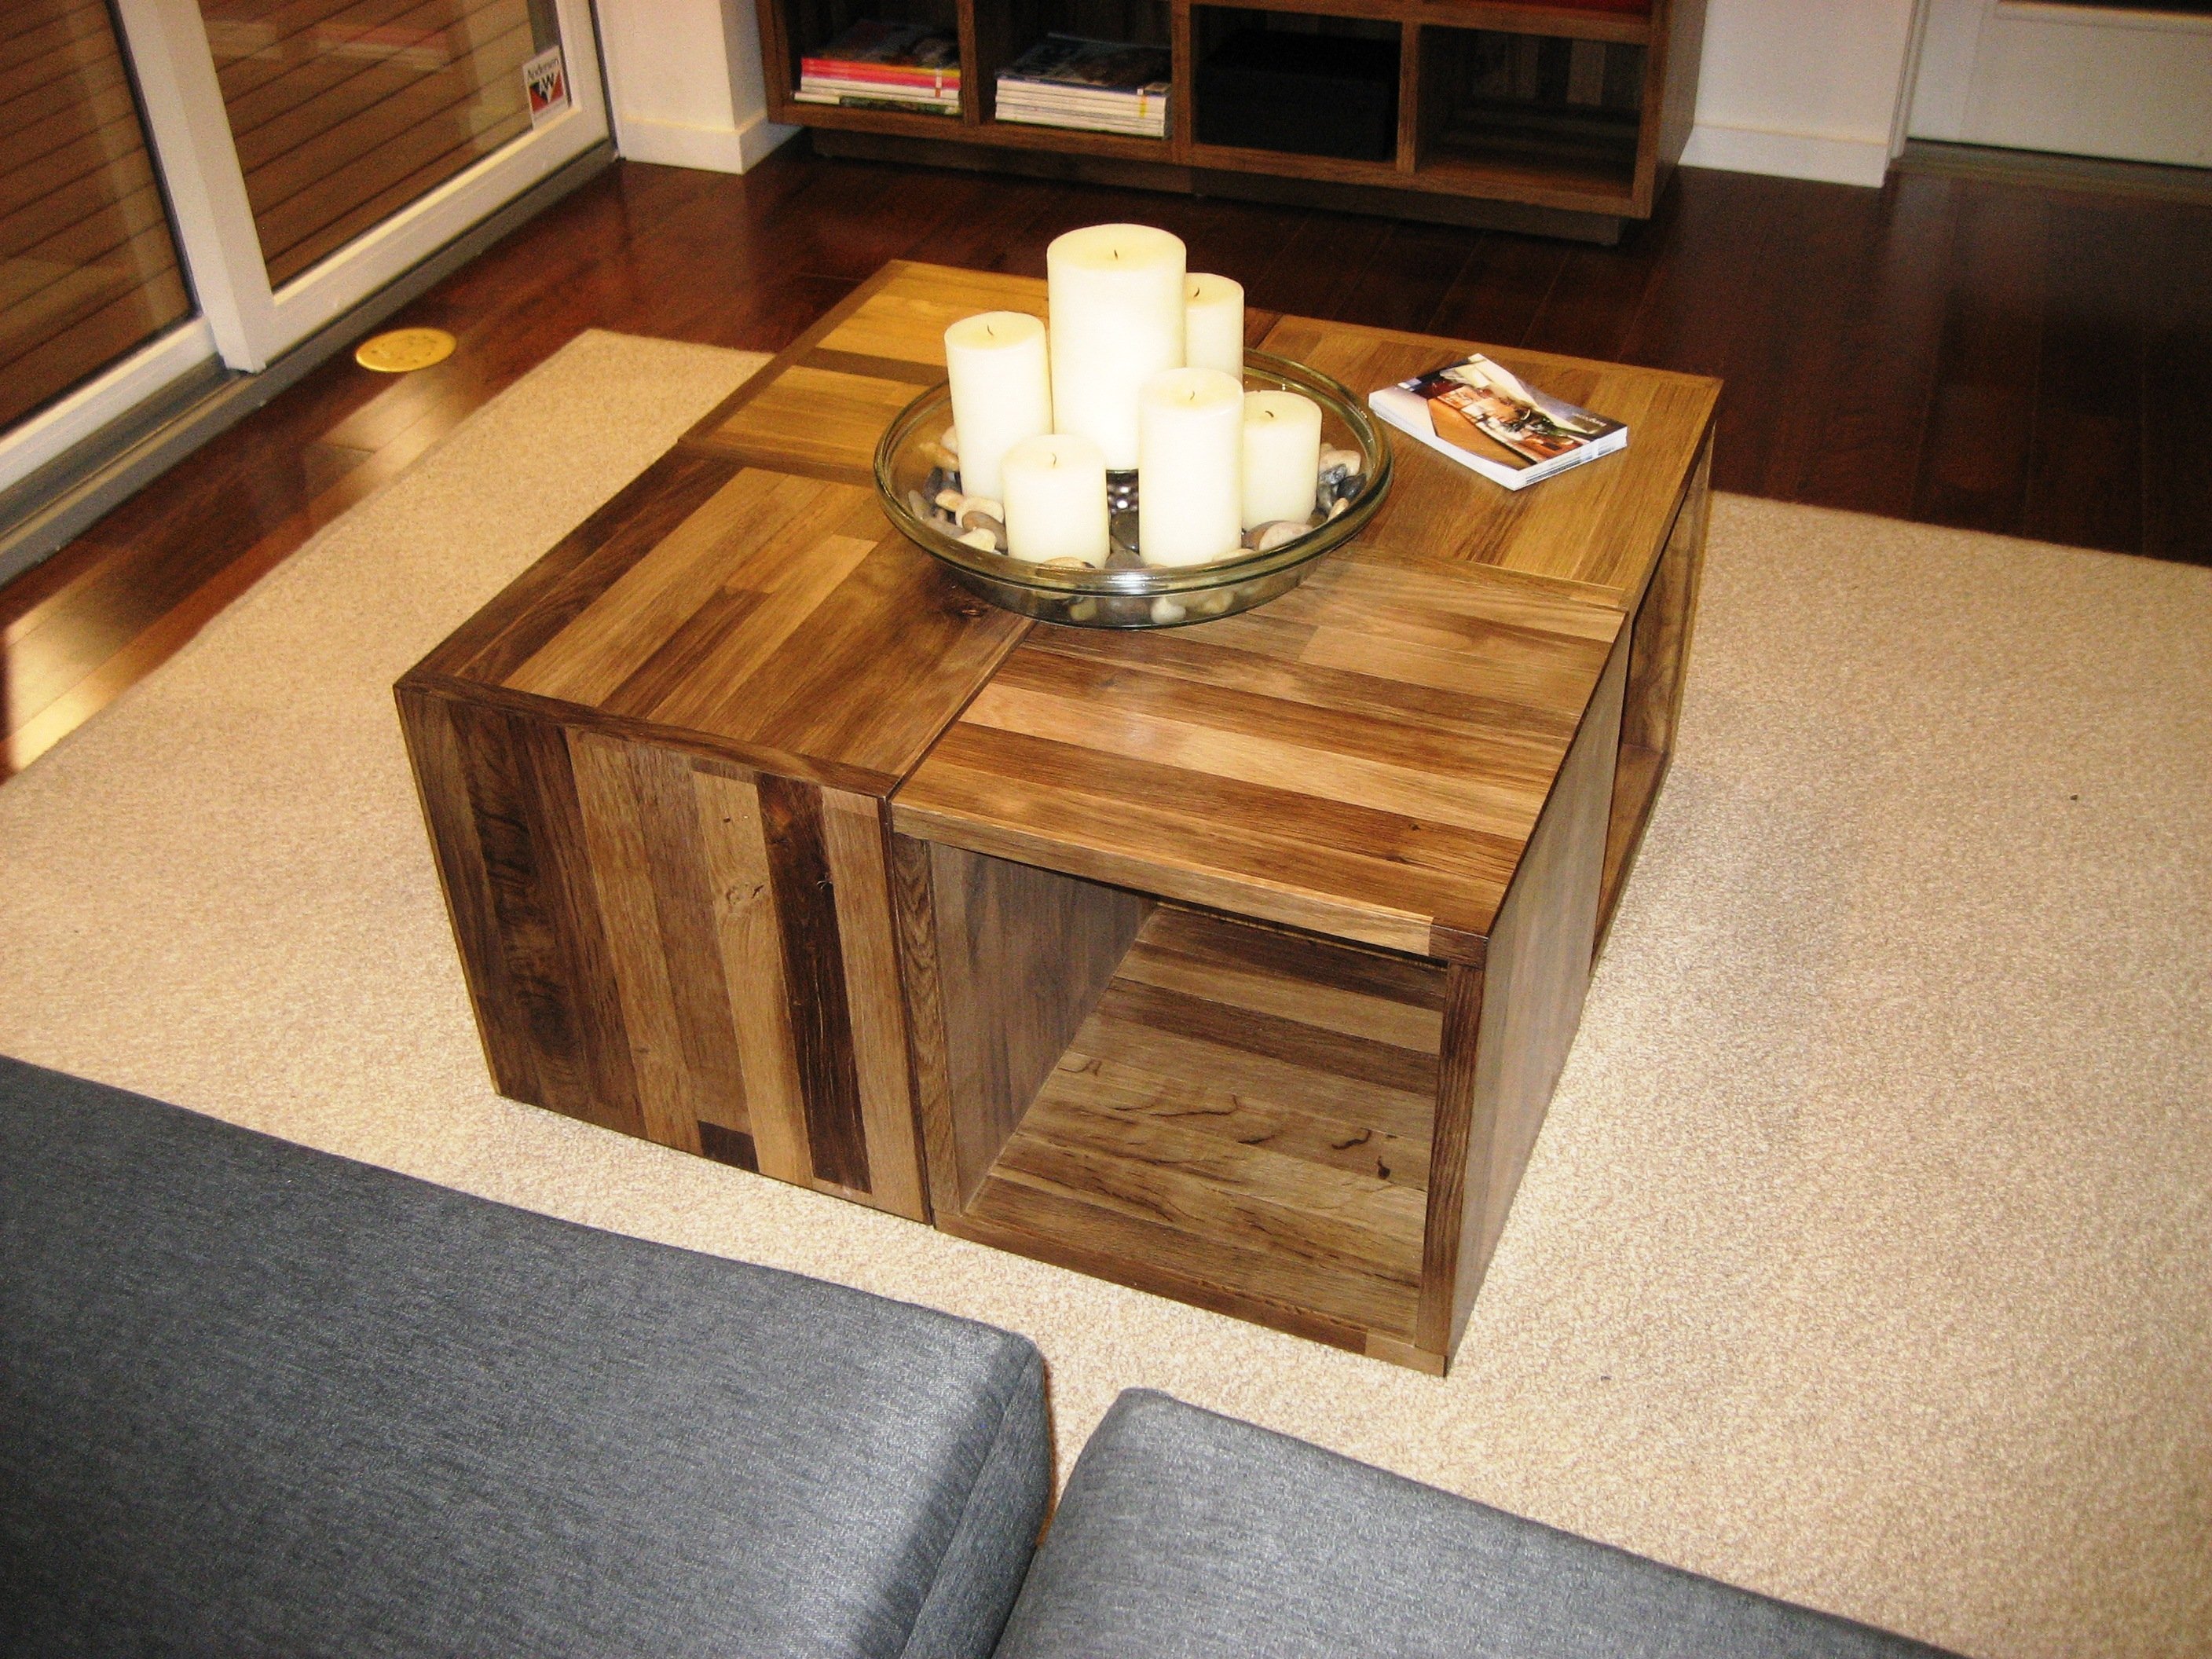 Сделать столик сам. Столик "Coffee Table" Design. Стол журнальный Wood Home t1297-50 Tanner. Необычные журнальные столики из дерева. Необычные кофейные столики.